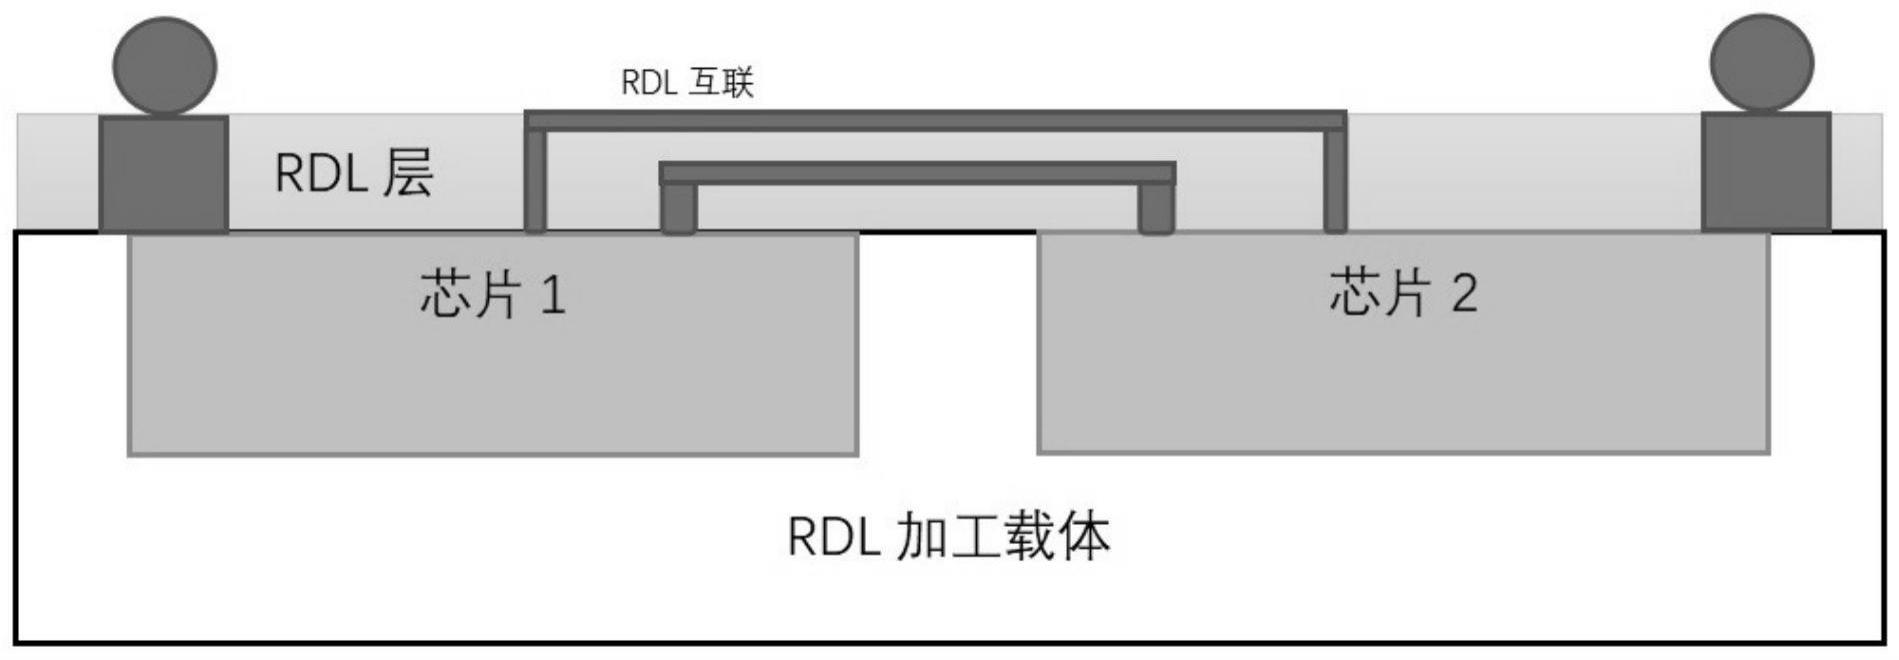 一种采用RDL技术降低封装基板层数的集成方法与流程